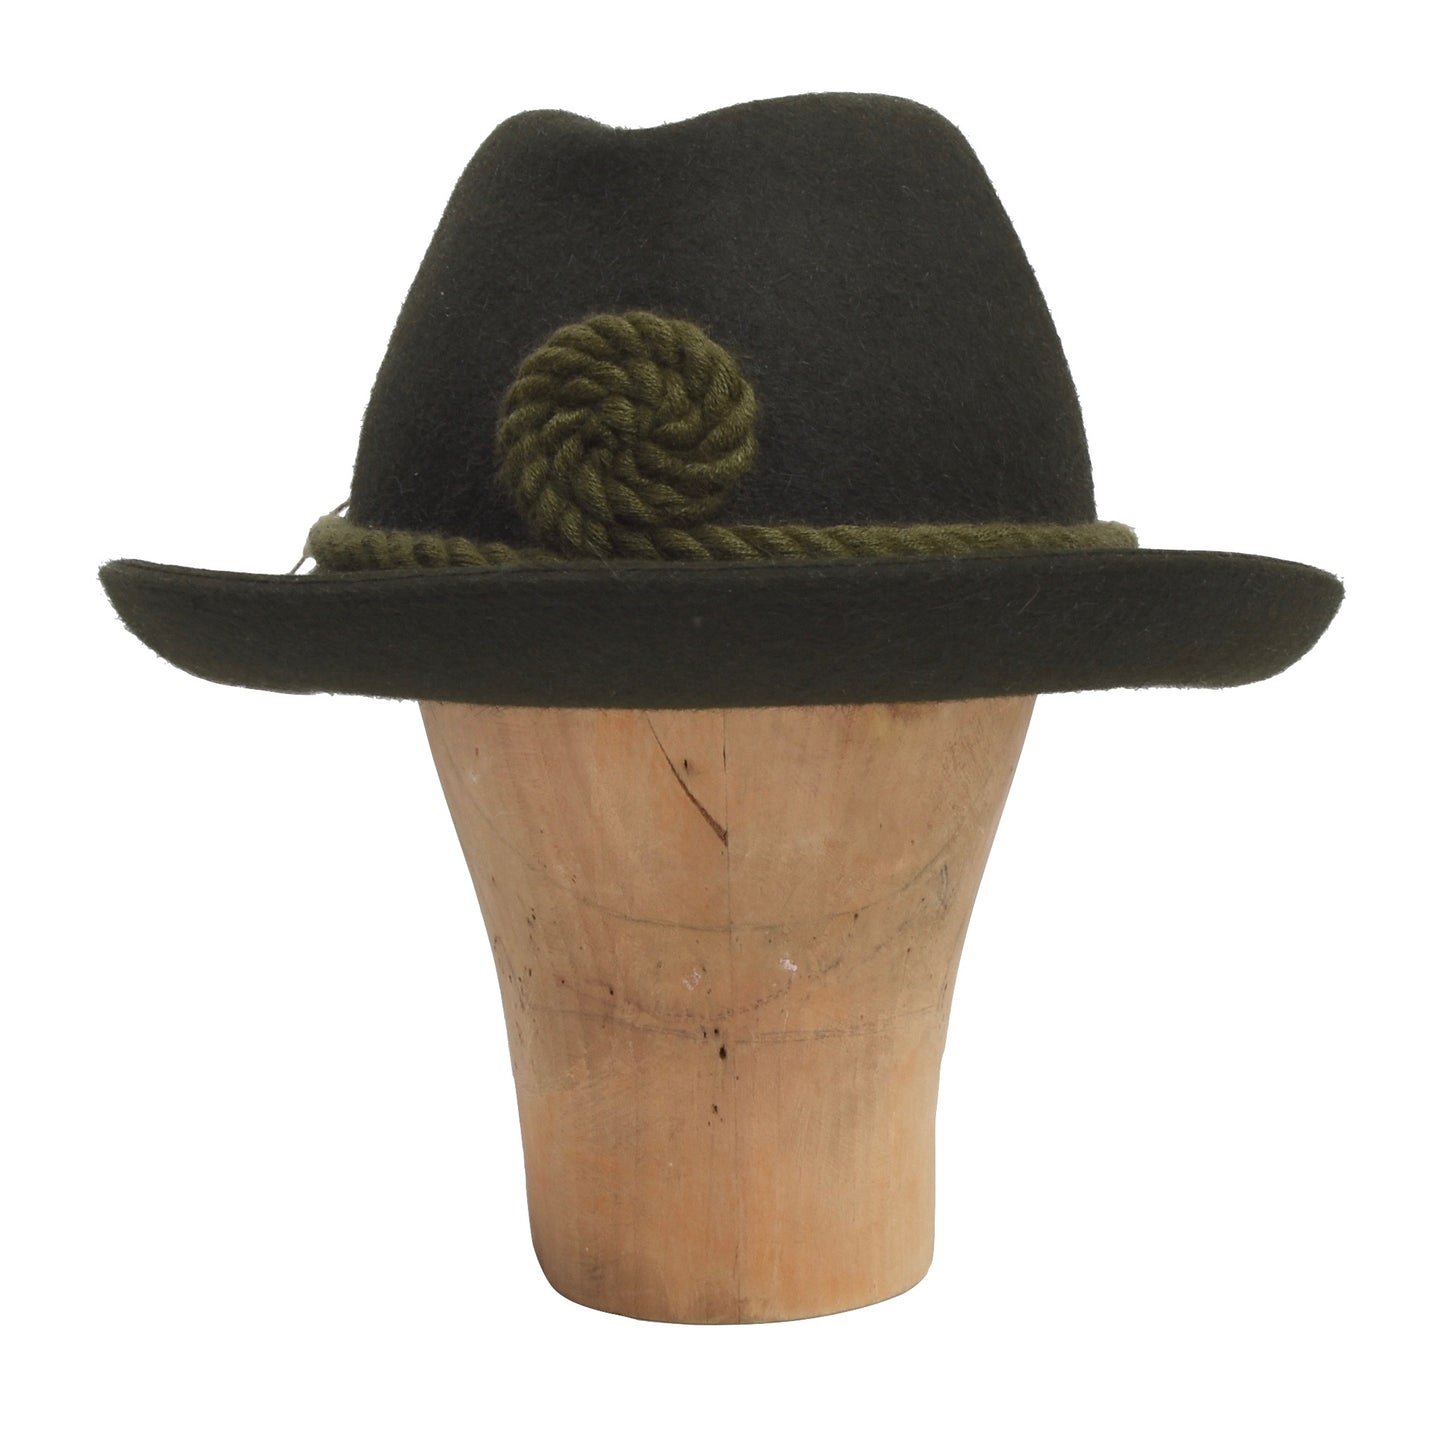 Collins Wien Trachten Hat Size 58 - Green